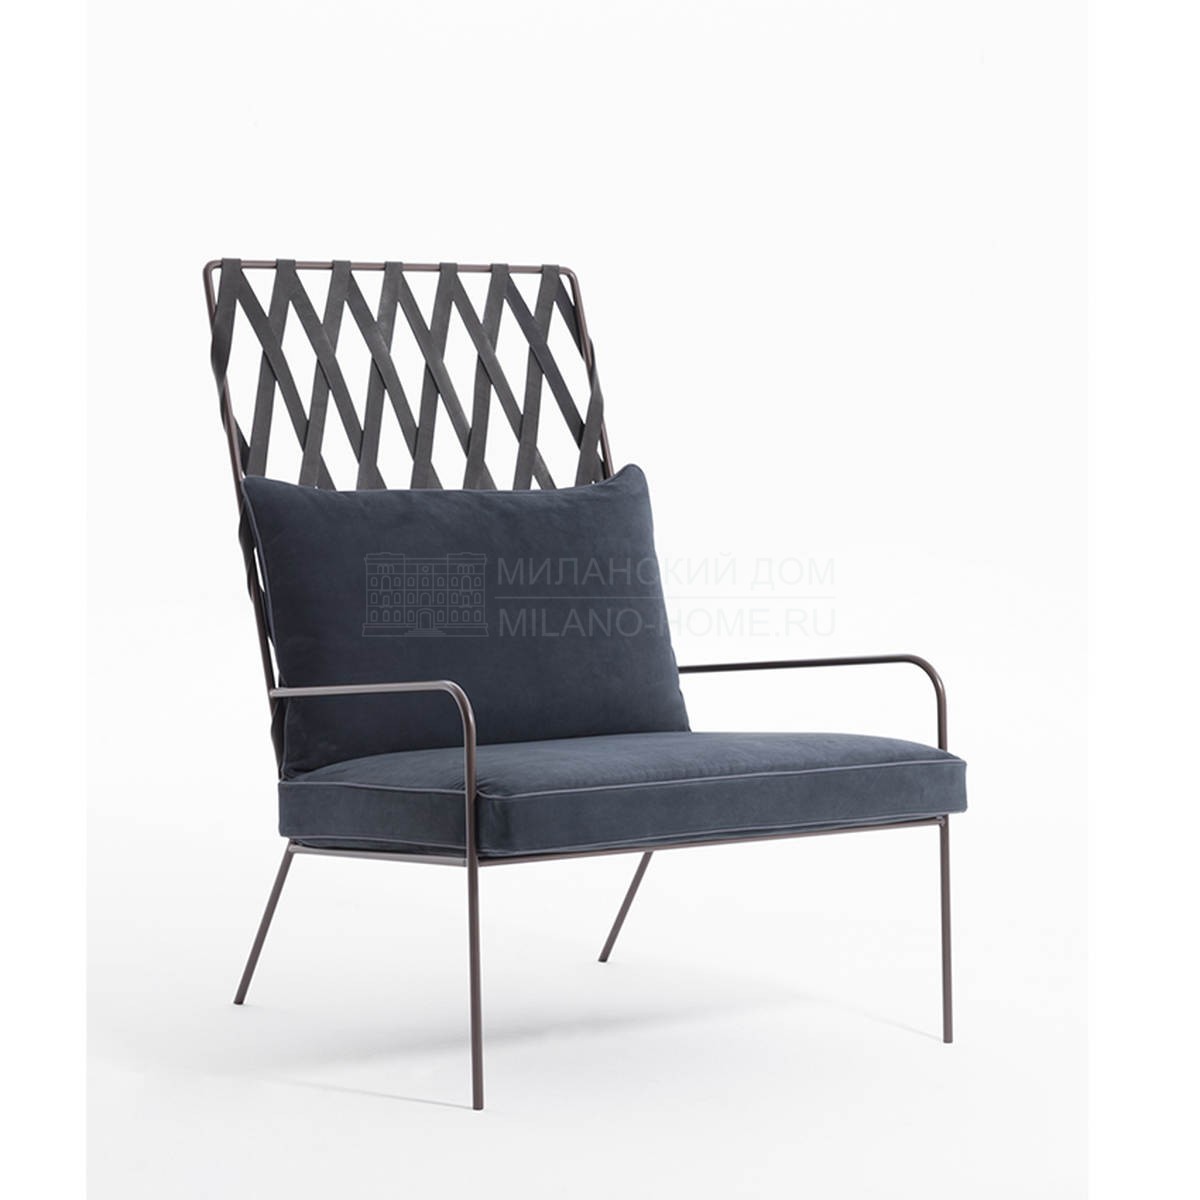 Лаунж кресло Alix armchair из Италии фабрики DESIREE